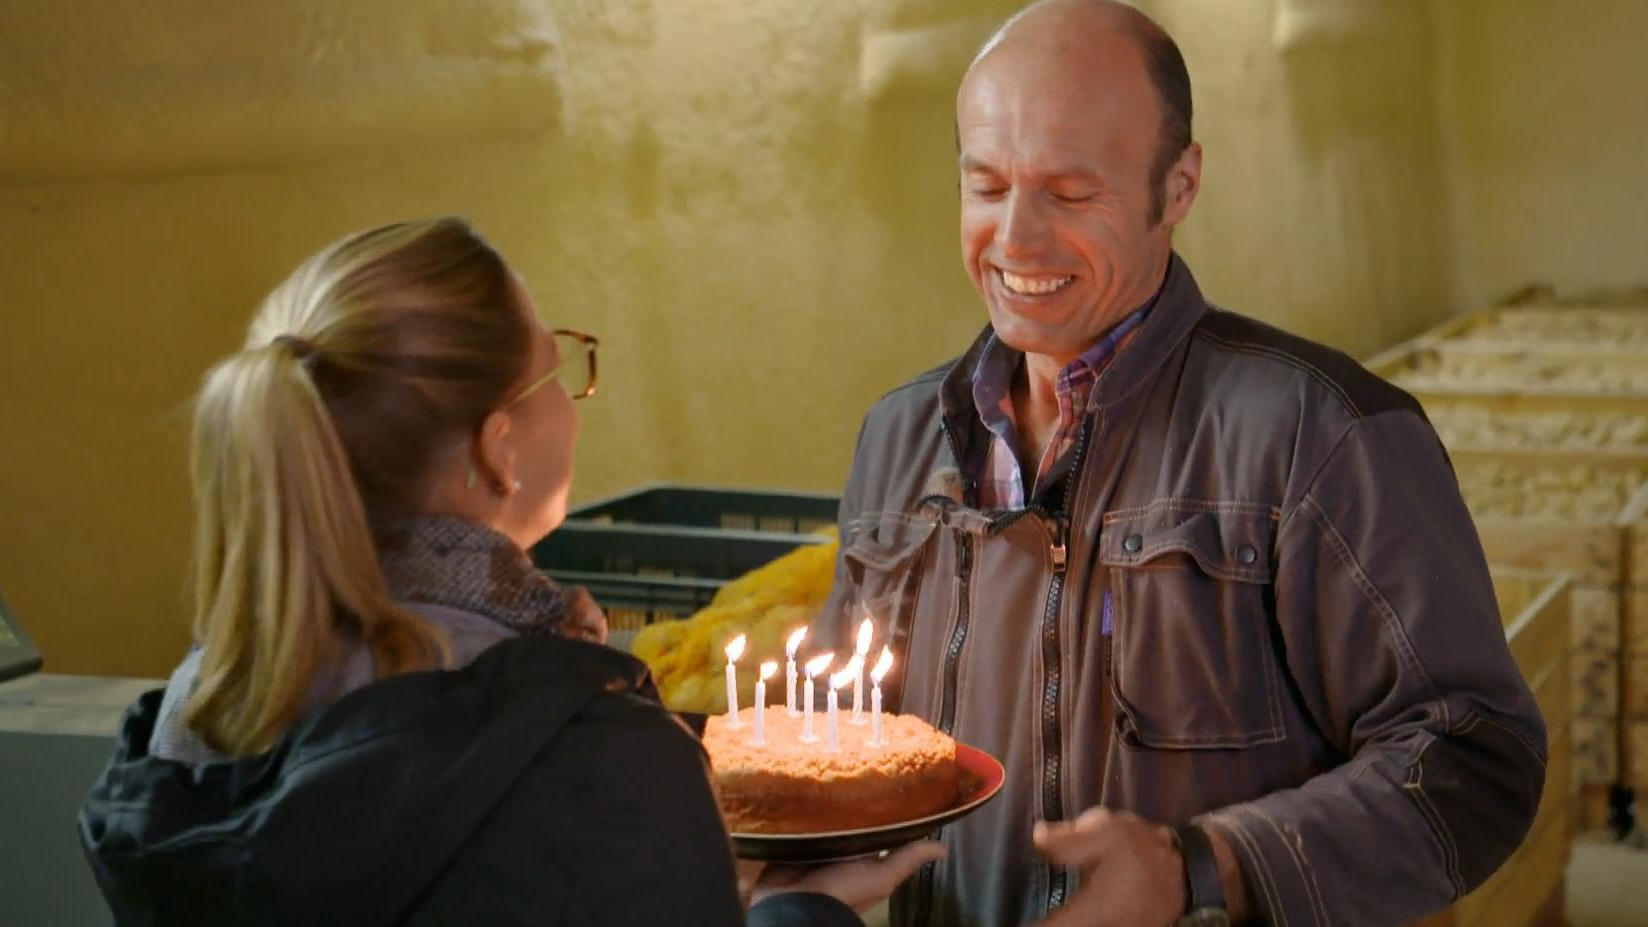 Zum Geburtstag überrascht Steffy Justins Vater mit einer Bauer-Torte wie Frau International: Bonne Anniversaire